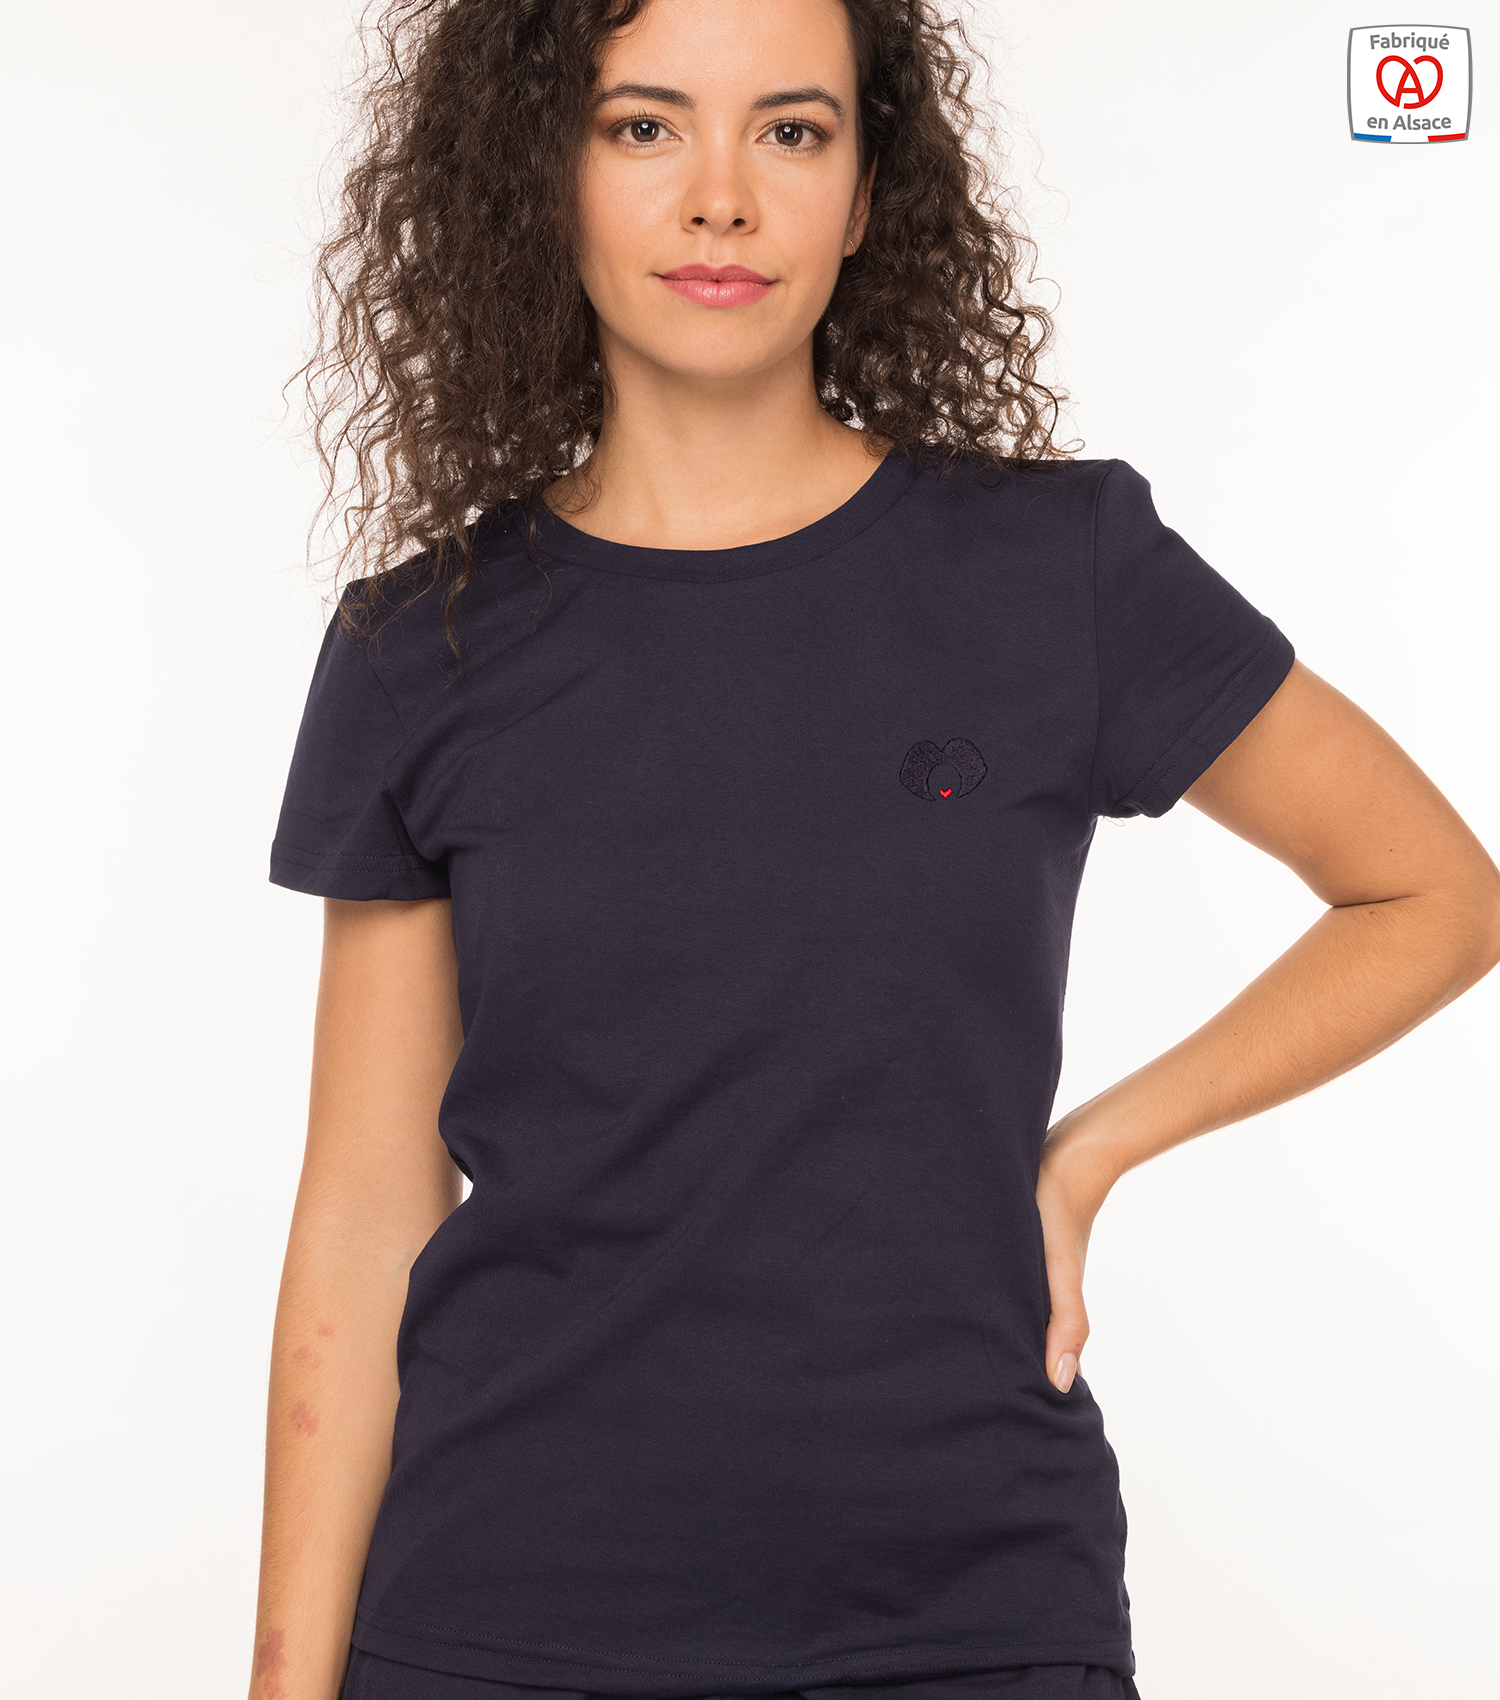 theim-t-shirt-femme-marine-alsacienne-made-in-alsace-1500x1700px